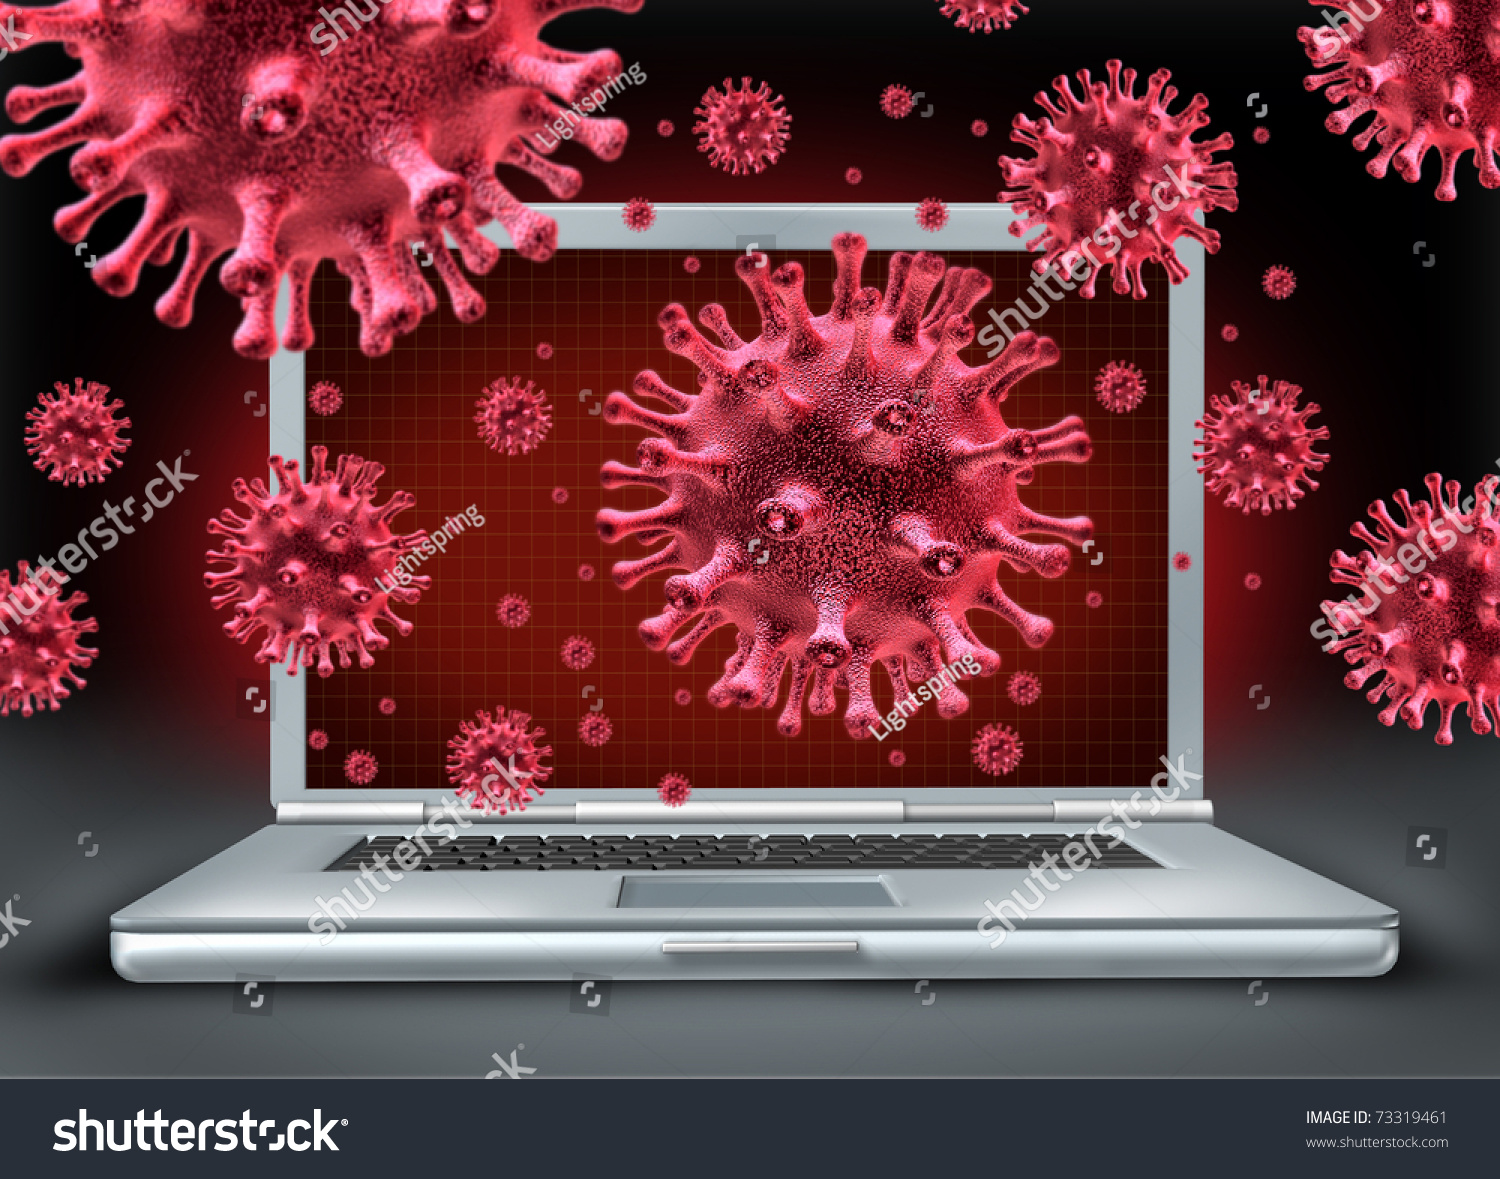 Компьютерные вирусы